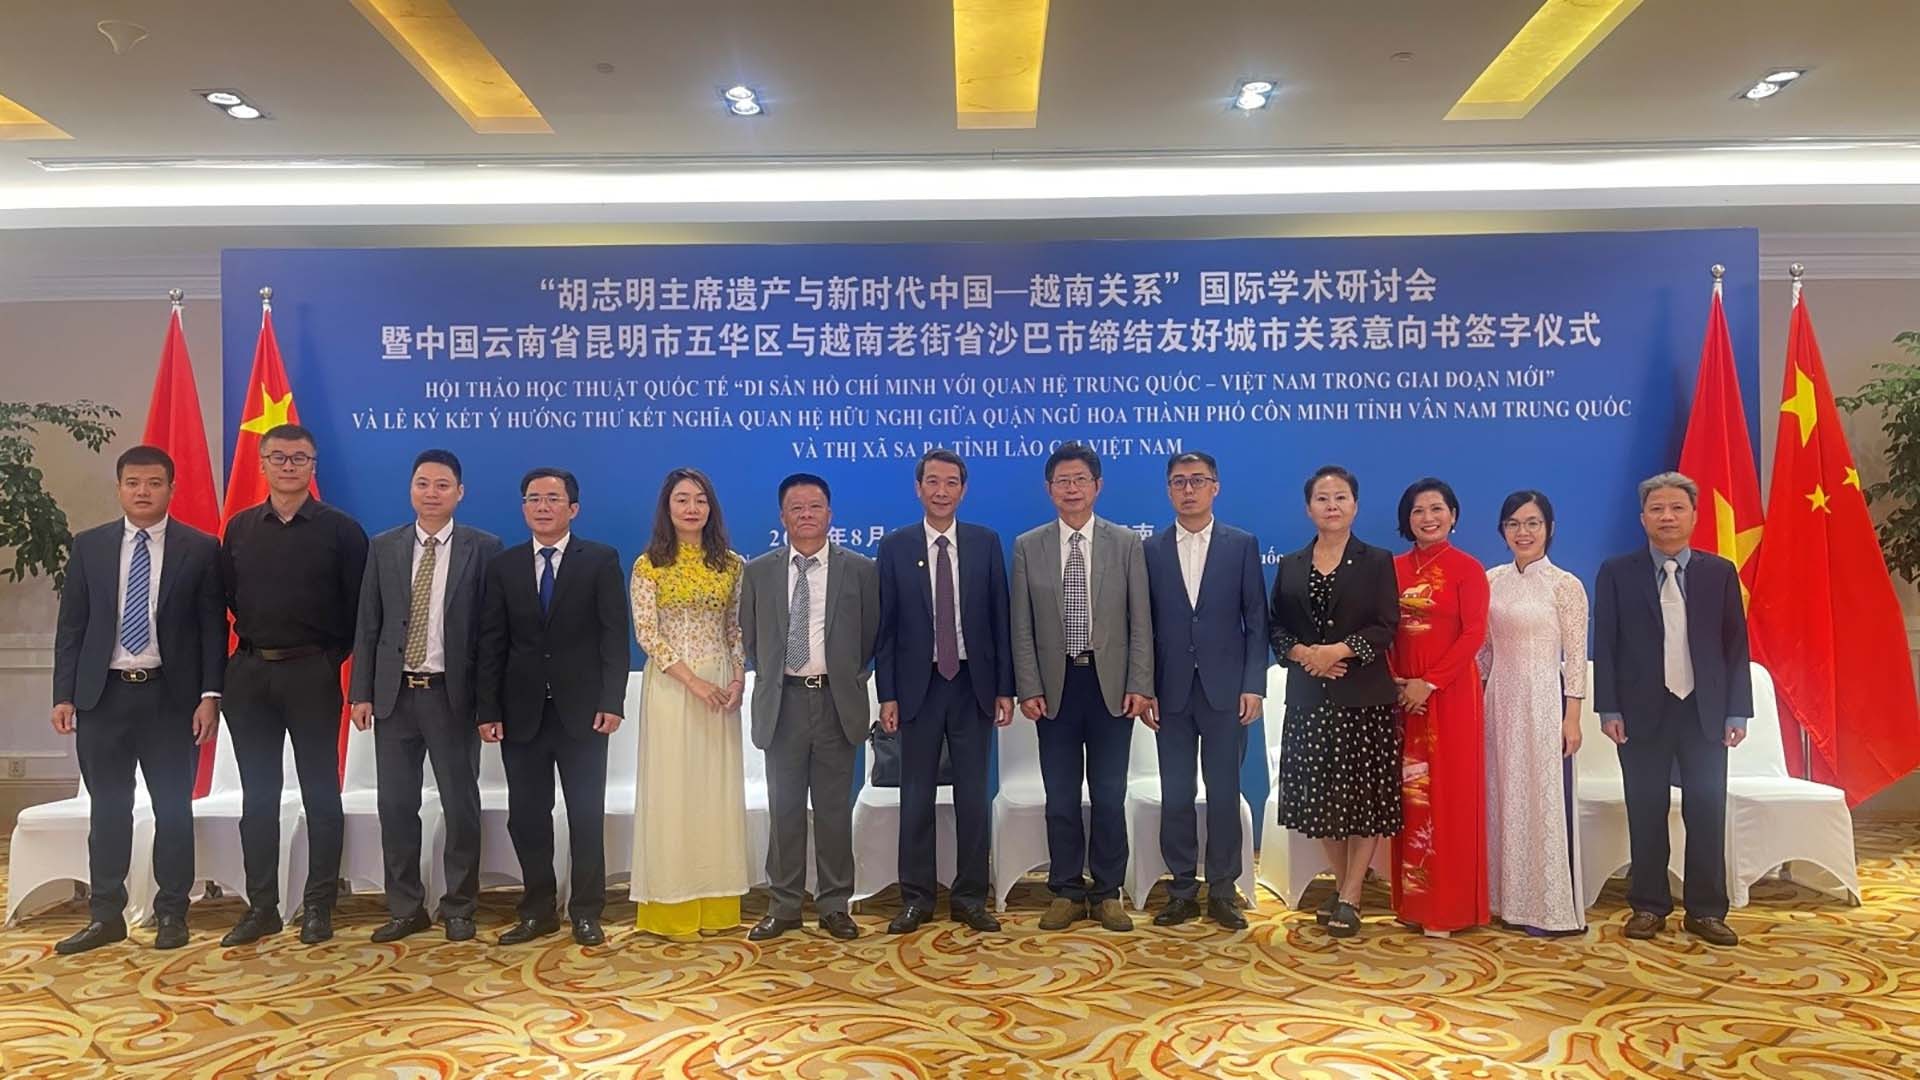 Tổng lãnh sự quán Việt Nam tại Côn Minh cùng đại diện cộng đồng Việt Kiều, cộng đồng doanh nghiệp tham dự Hội thảo.